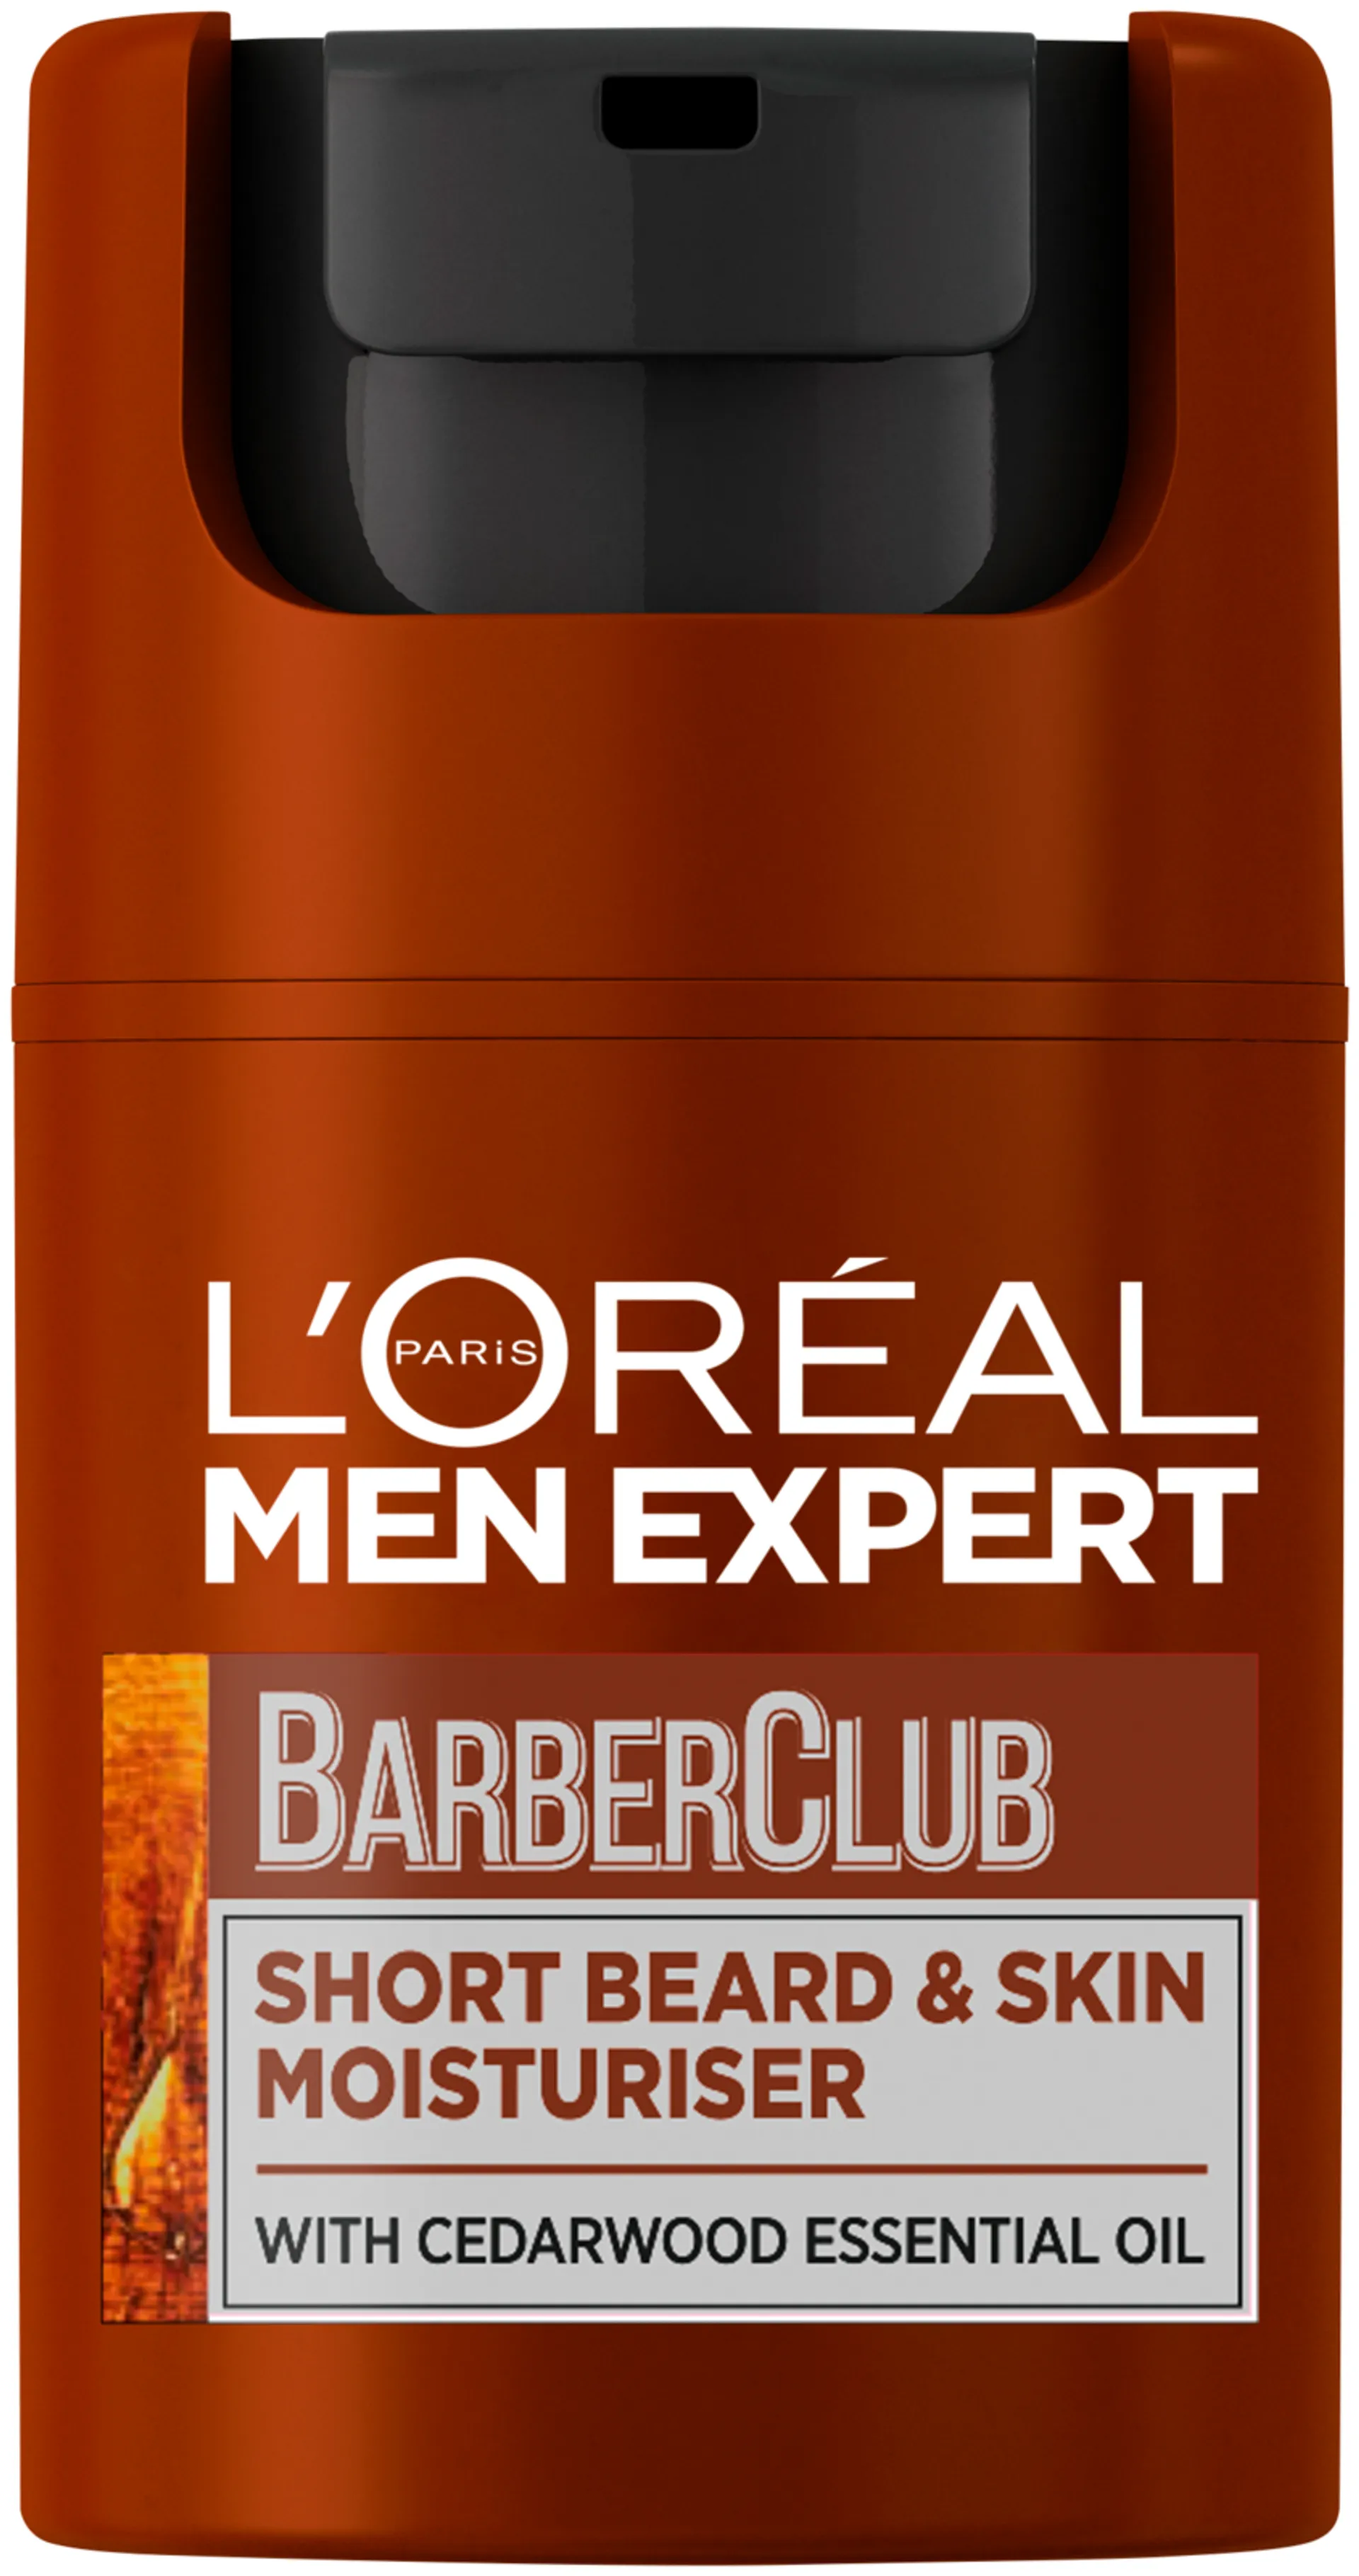 L'Oréal Paris Men Expert BarberClub Short Beard & Face Moisturiser päivävoide 50ml - 1